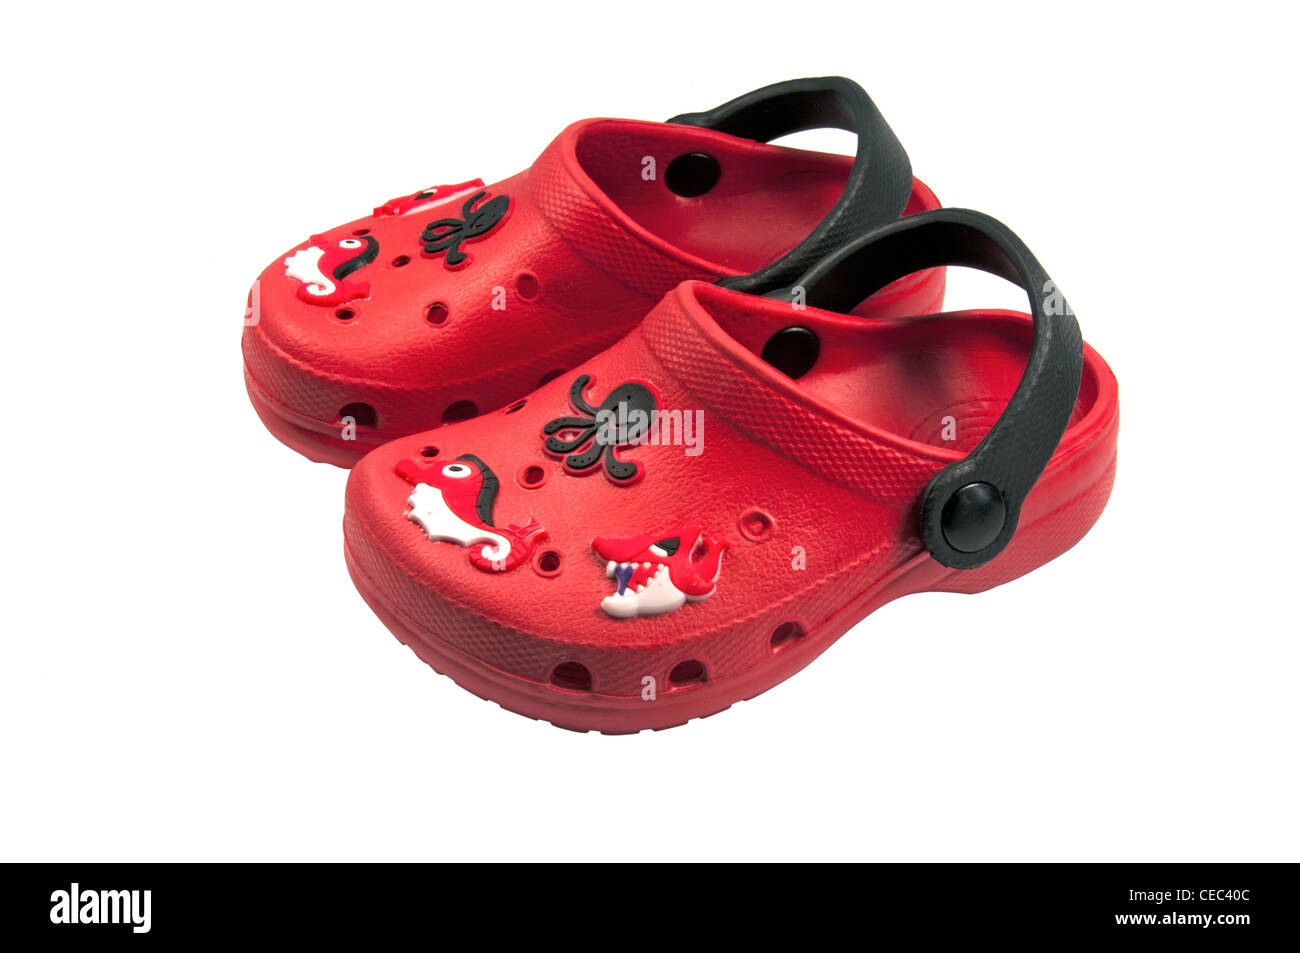 Sandalias Crocs rojo Fotografía de stock - Alamy